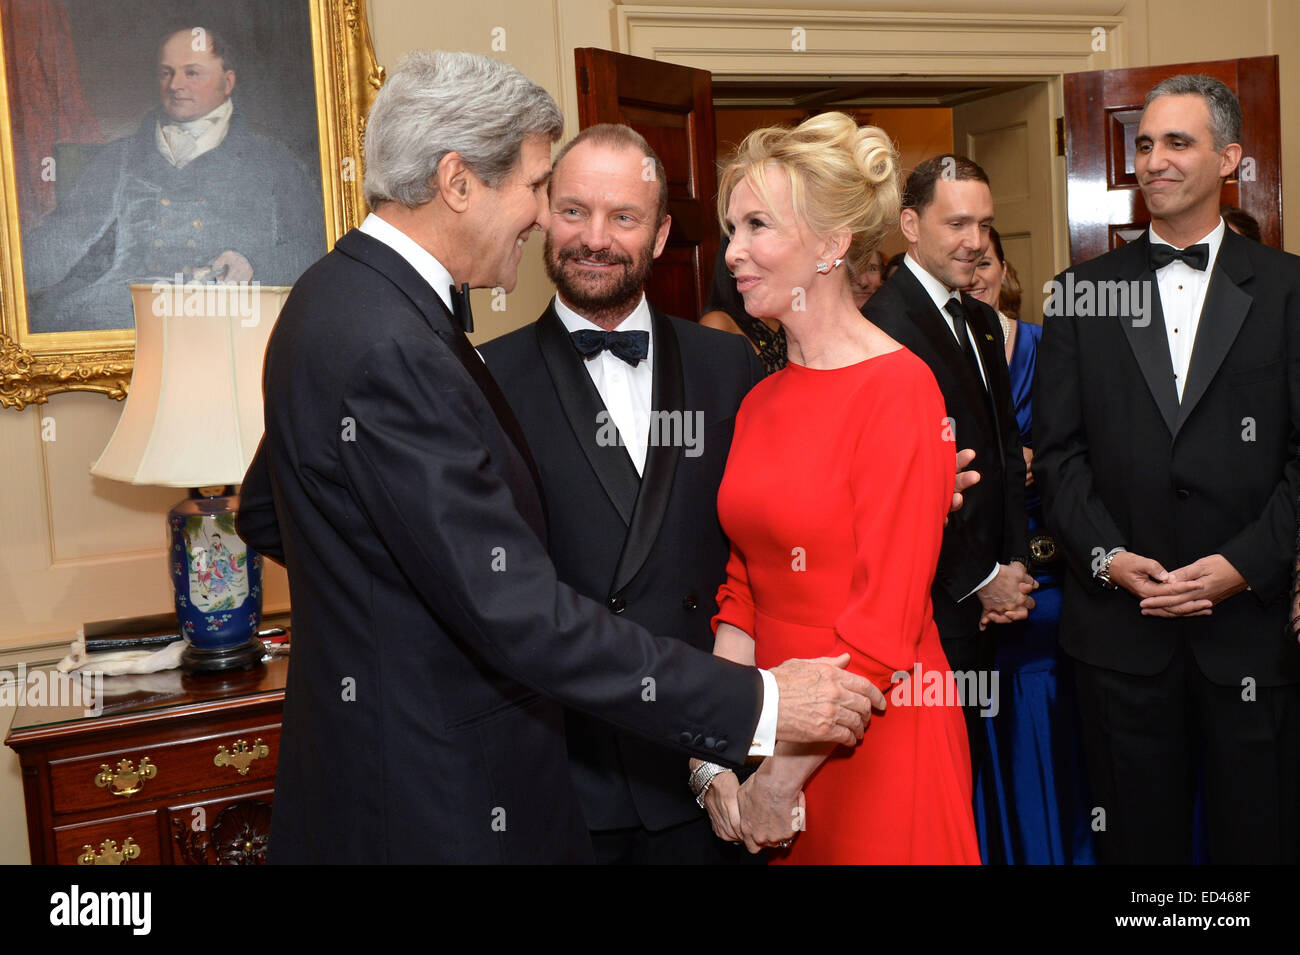 El Secretario de Estado de Estados Unidos, John Kerry Kennedy Center 2014 saluda homenajeado cantautor Sting y su esposa, Trudie Styler, antes fue el anfitrión de una cena en honor de los homenajeados en el Departamento de Estado de Estados Unidos en Washington, D.C., el 6 de diciembre de 2014. Foto de stock